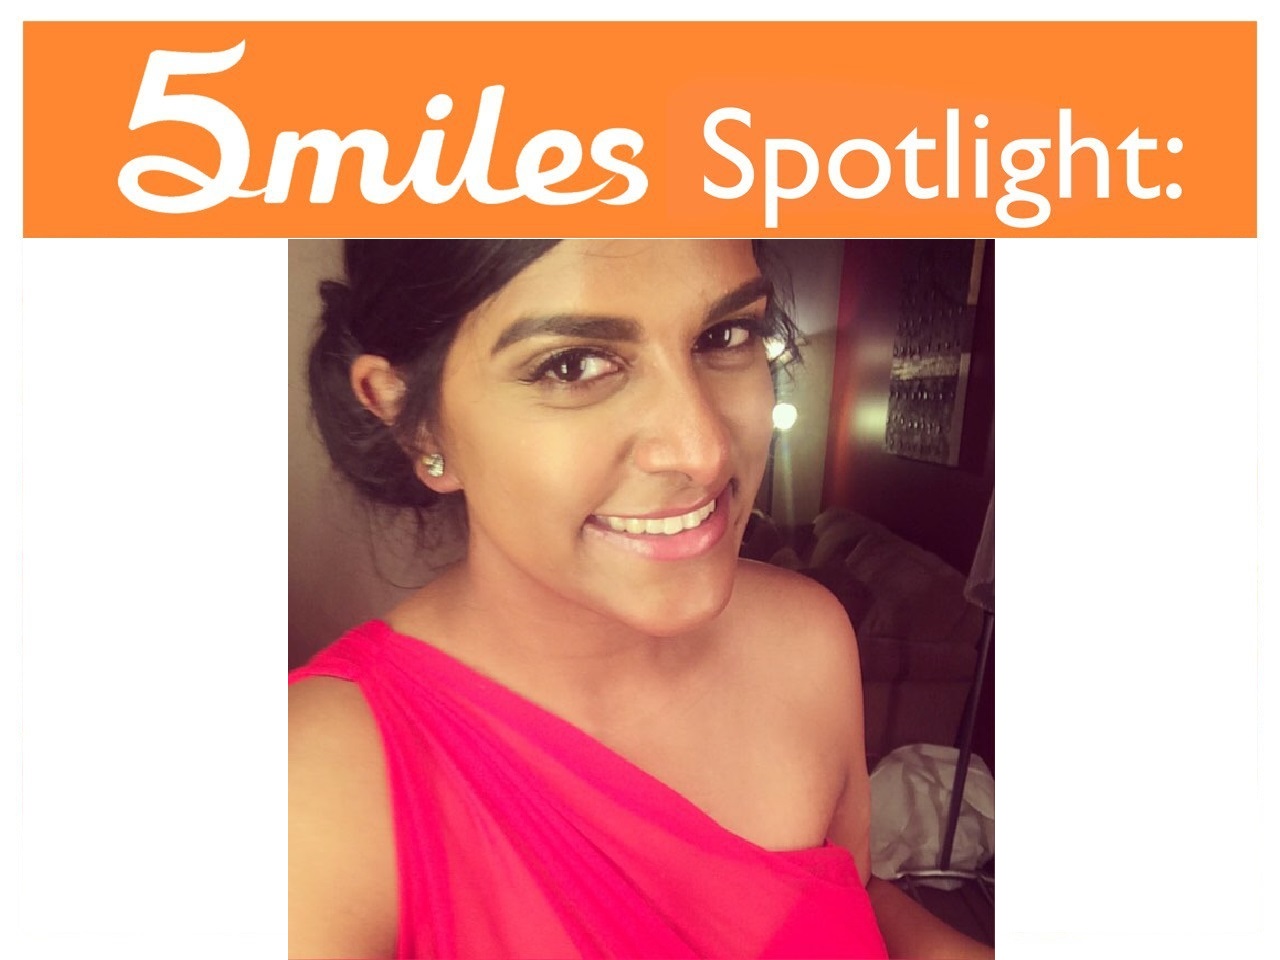 5miles Spotlight - Soniyaben Patel